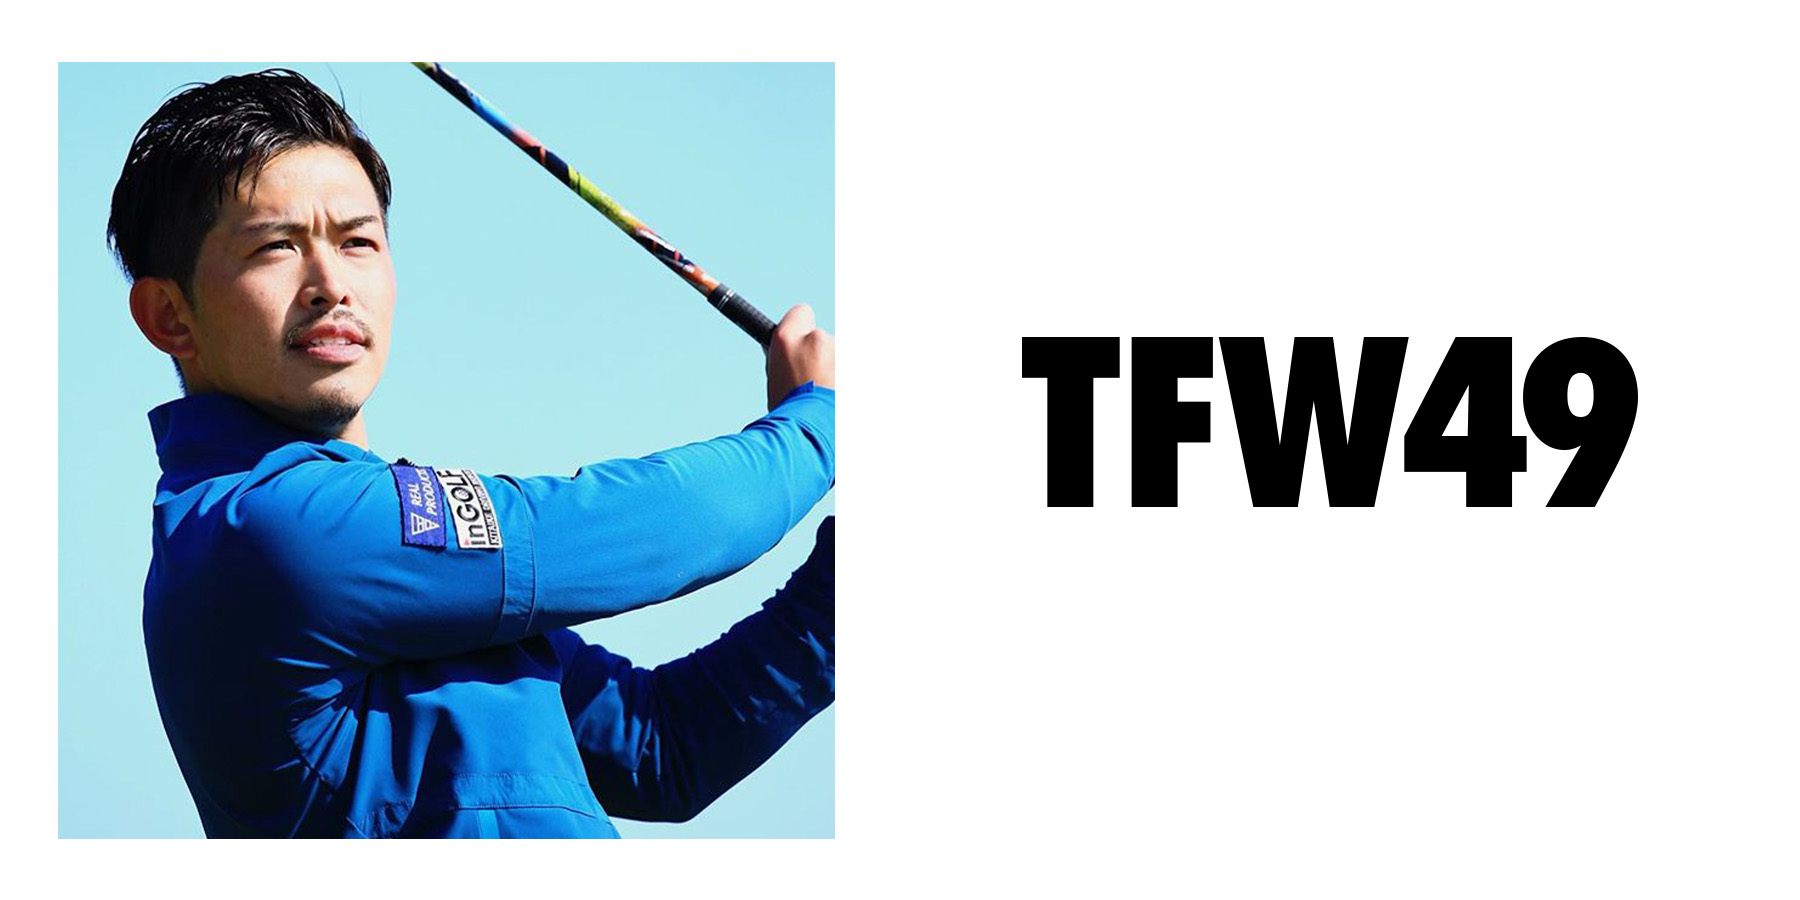 大西翔太ツアープロコーチにTFW49をご紹介いただいております